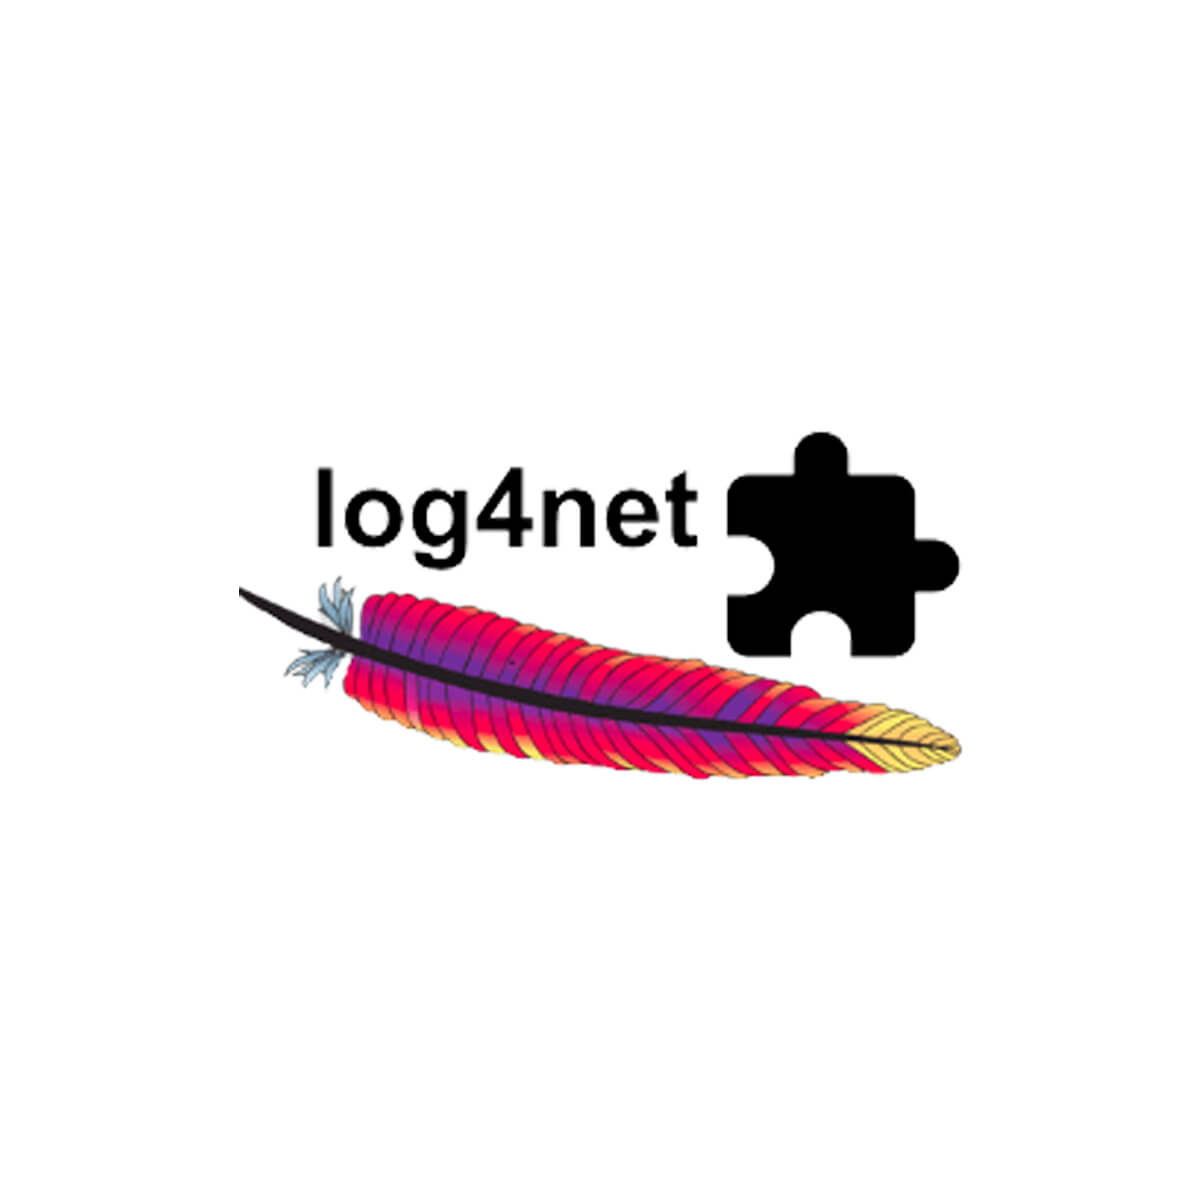 log4net